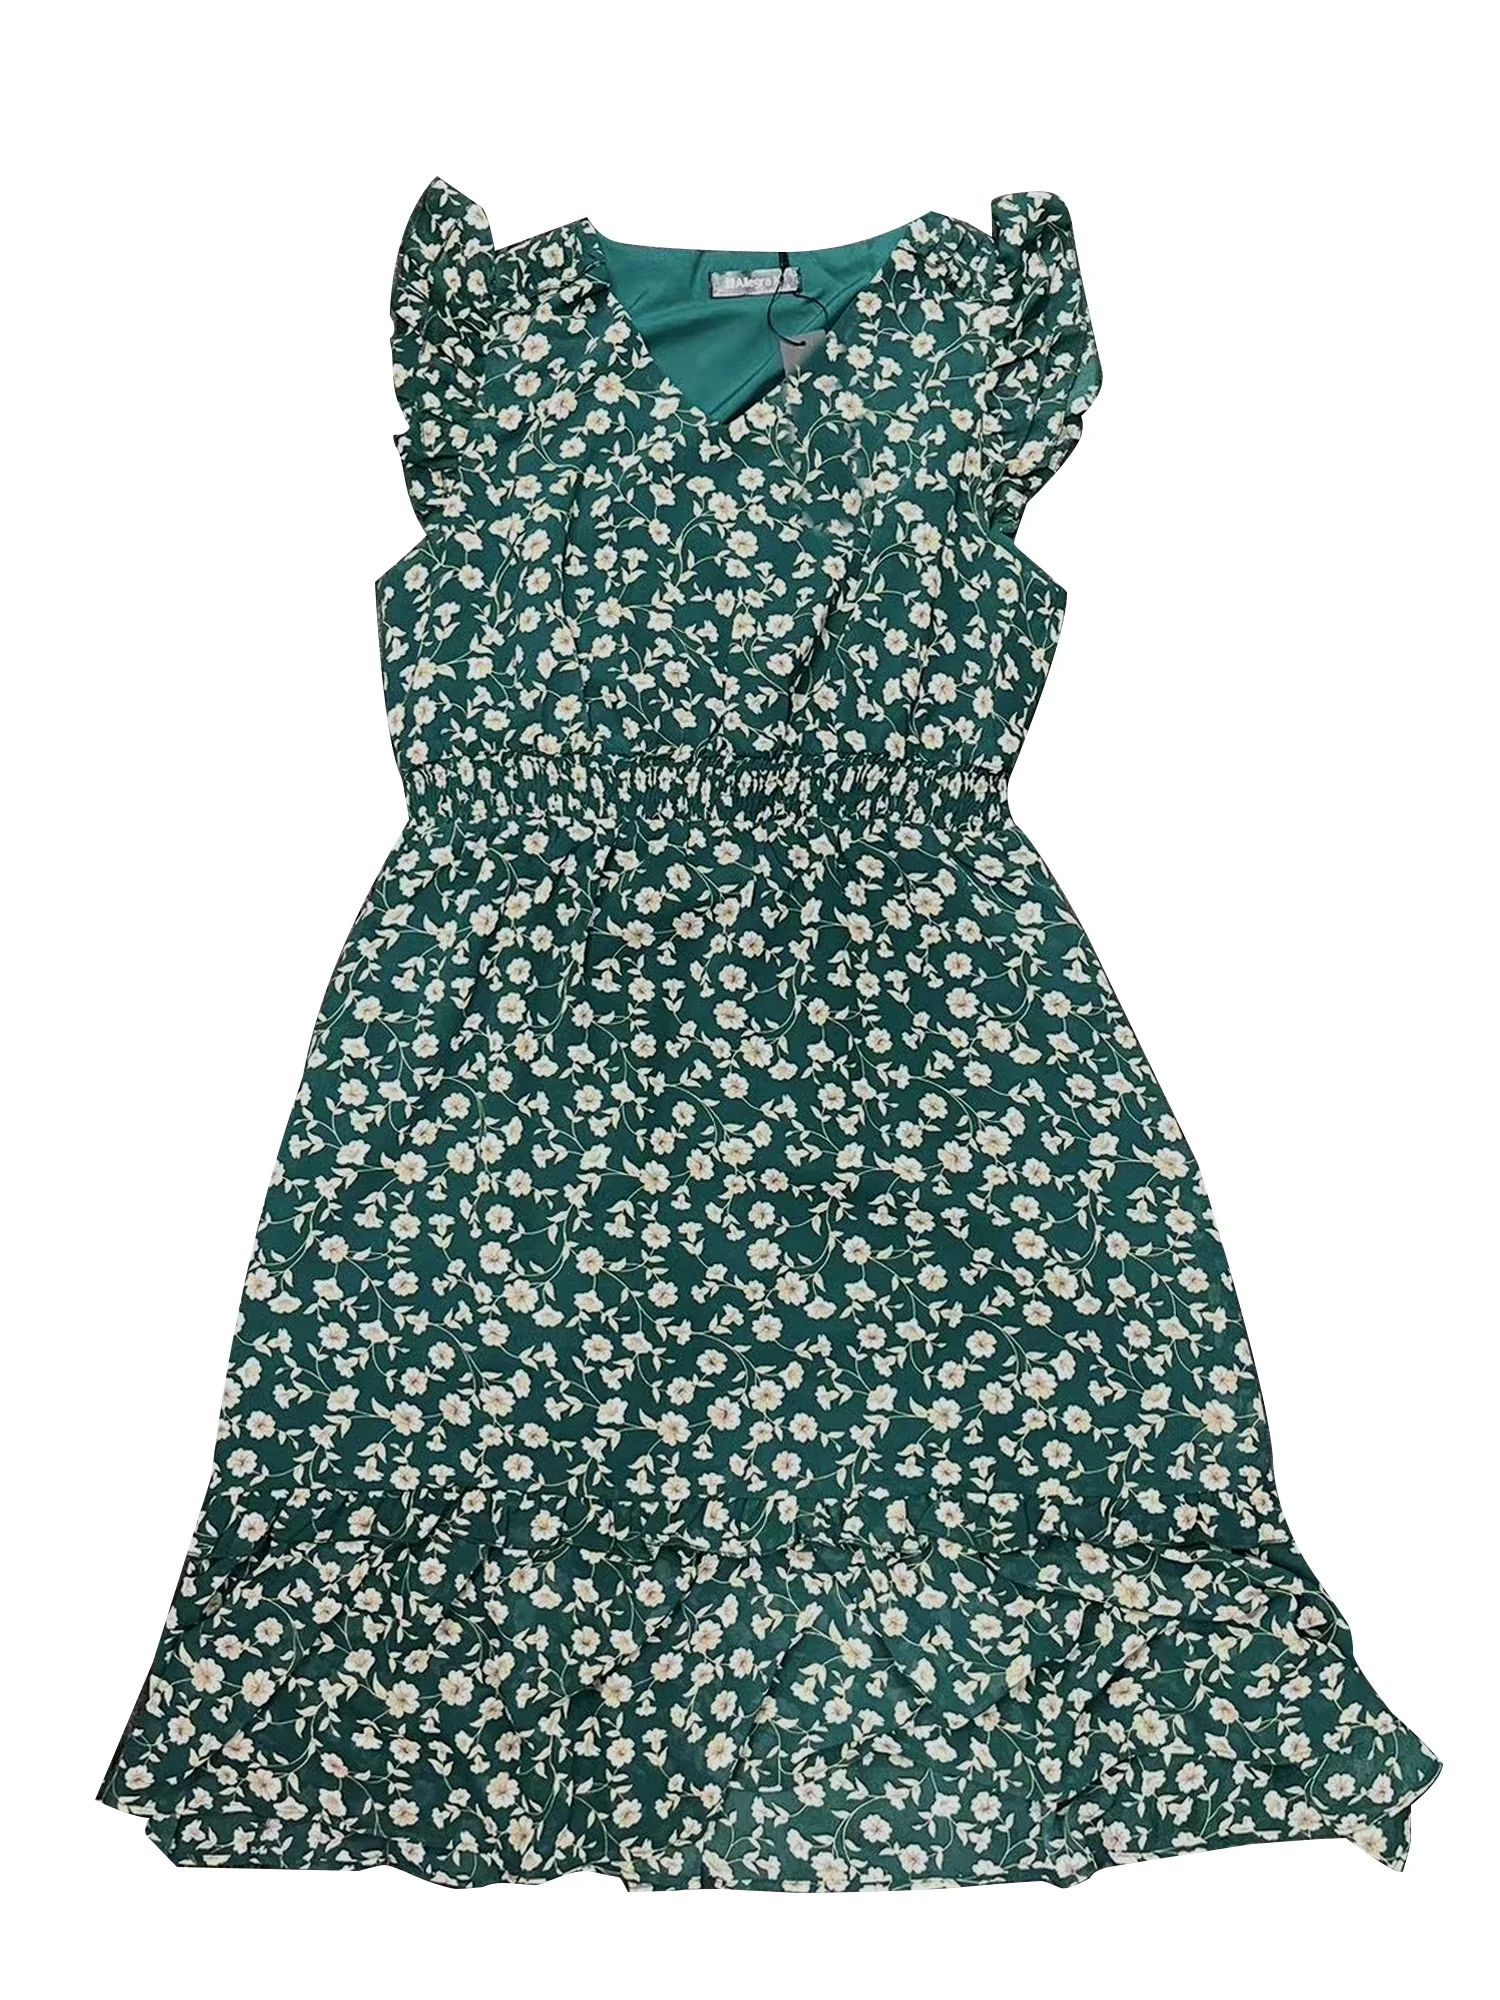 Unique Bargains Women's Floral Flutter Sleeves V Neck Smocked Ruffle Dress M Green | Walmart (US)